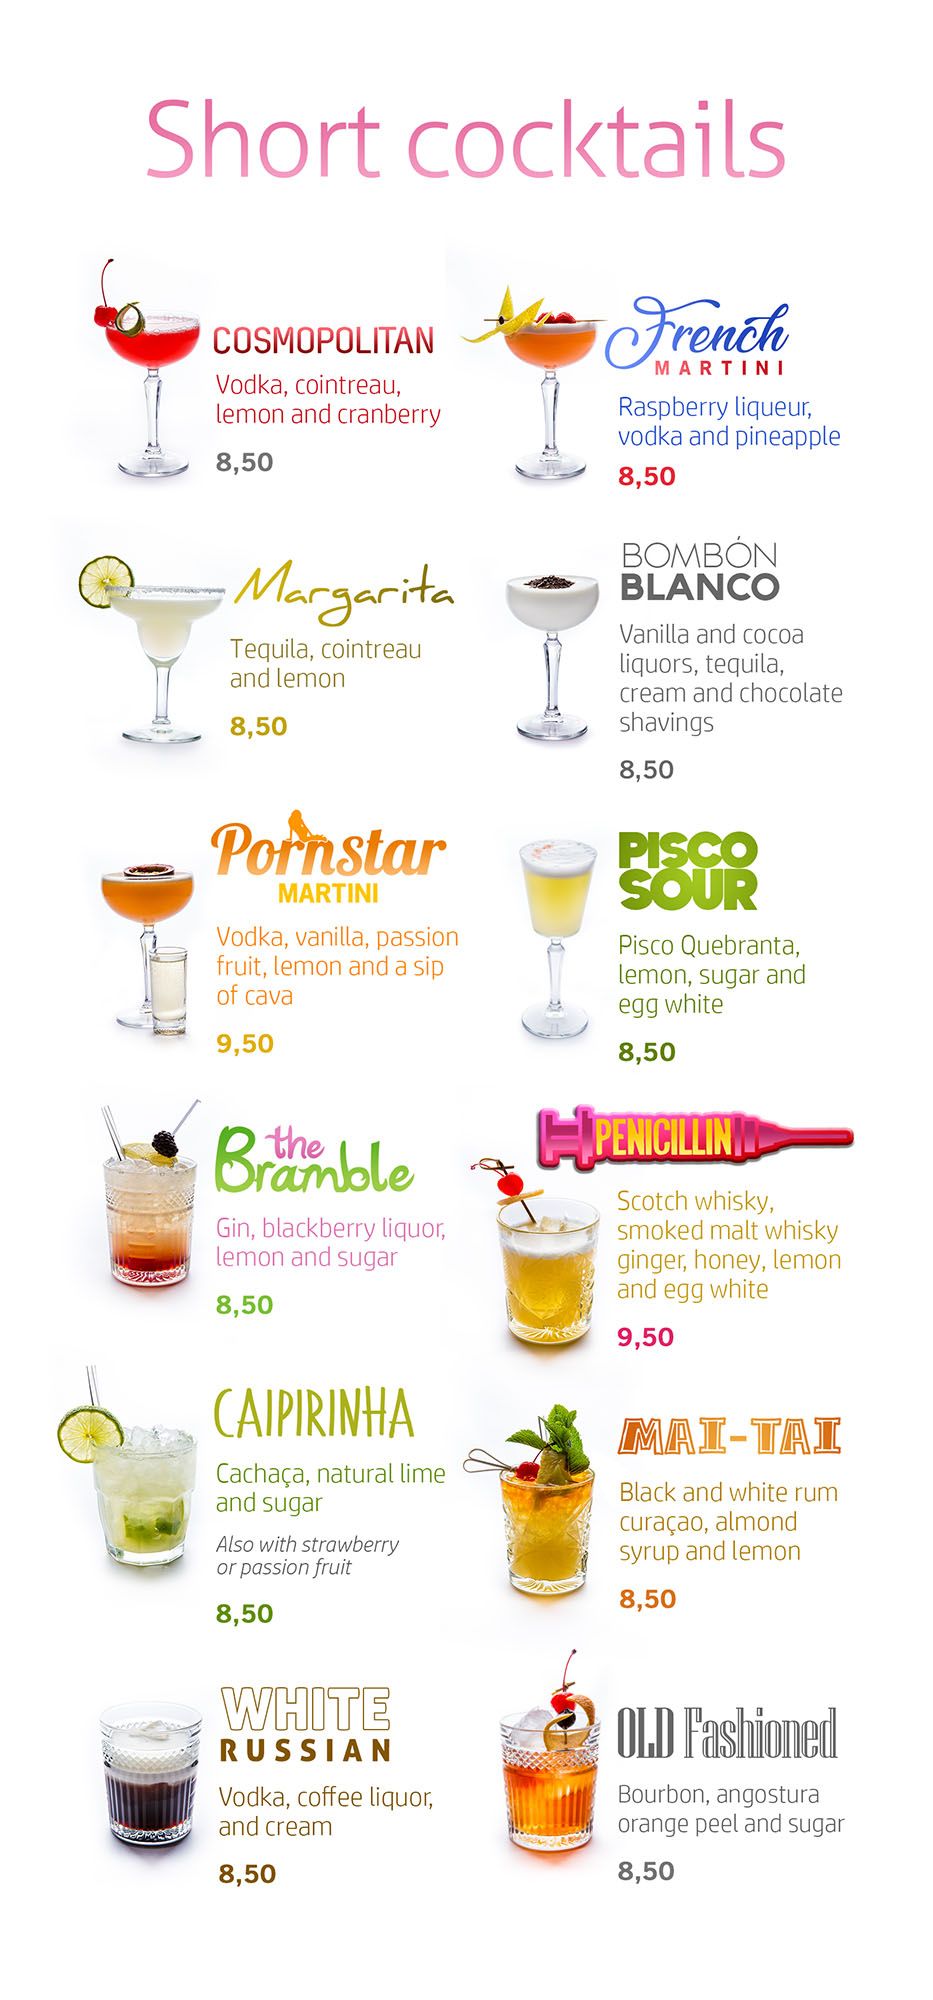 Short cocktails menu